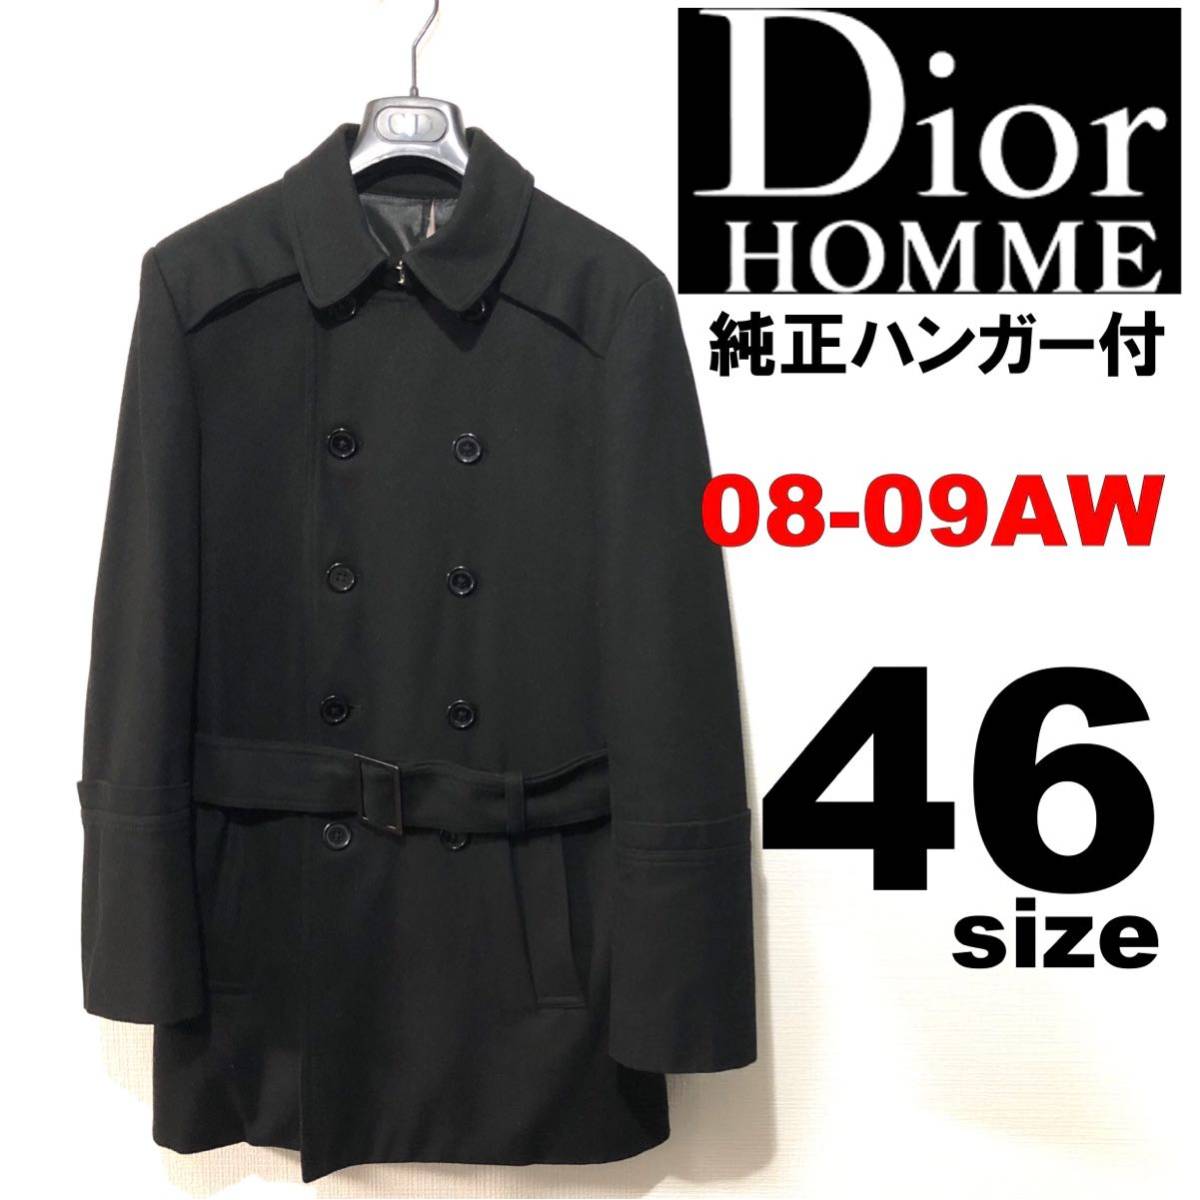 Dior Homme ディオール オム グレン チェック コート ピーコート 直営店限定セール